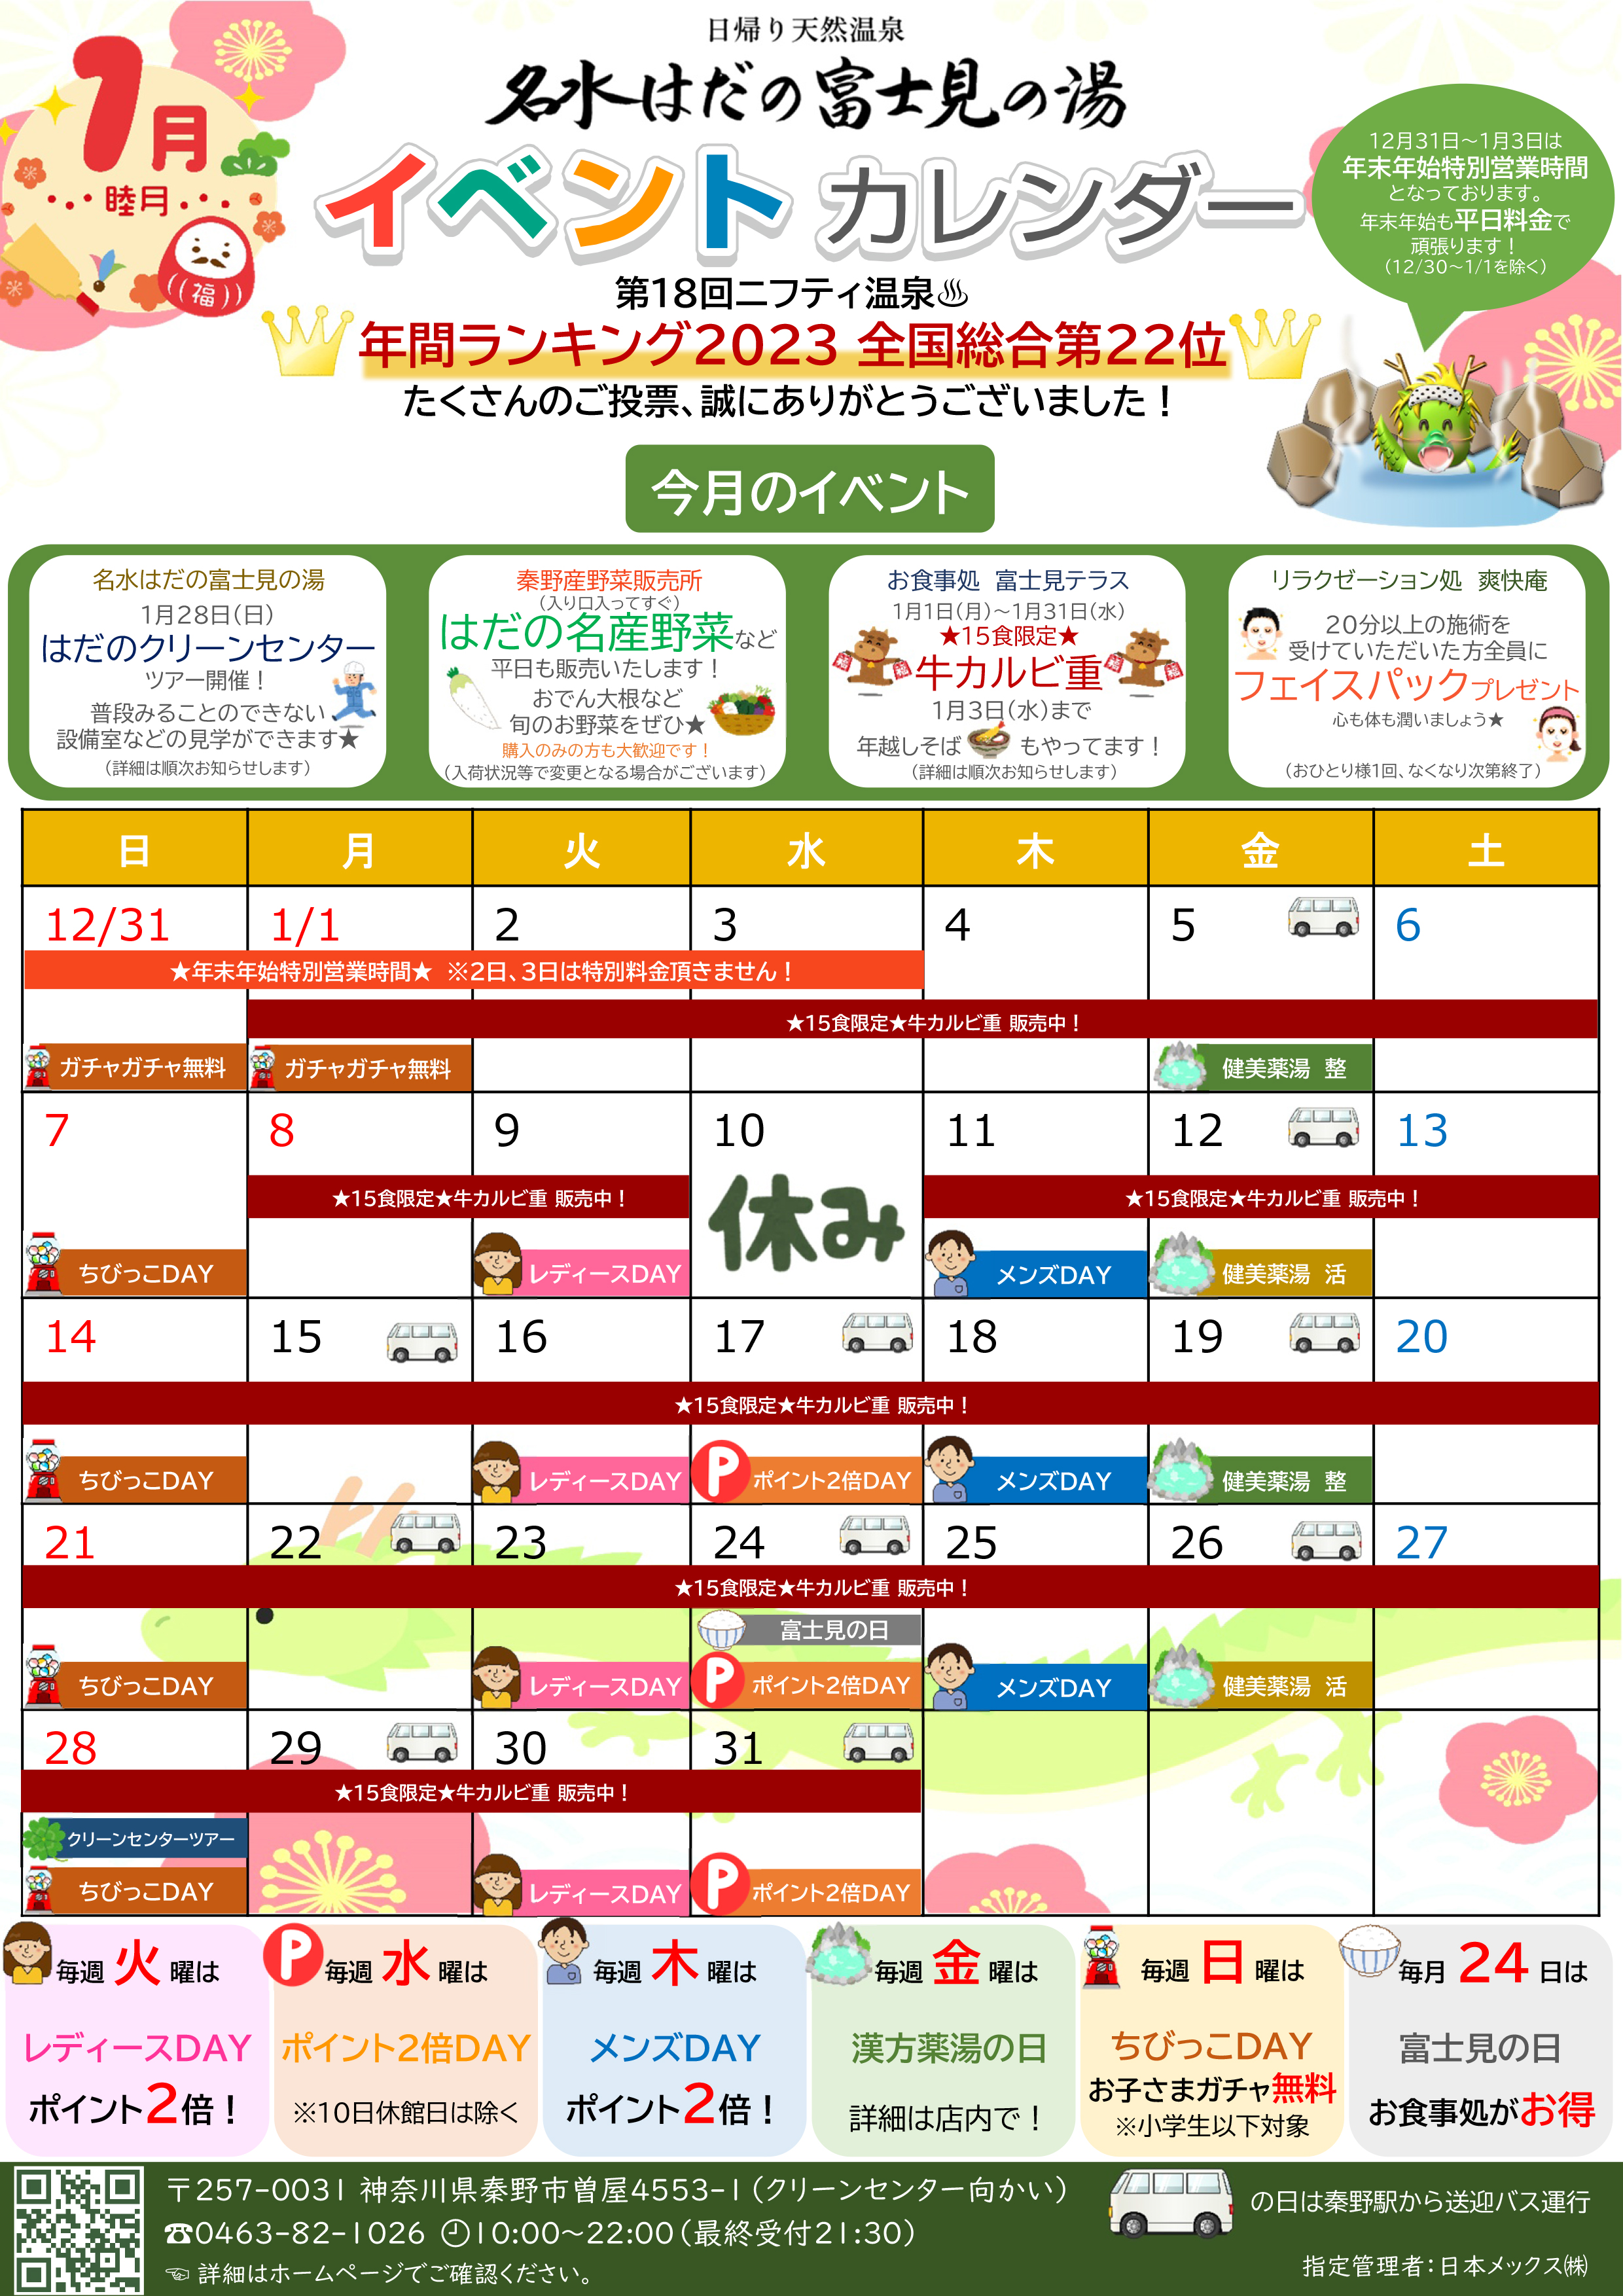 イベントカレンダー